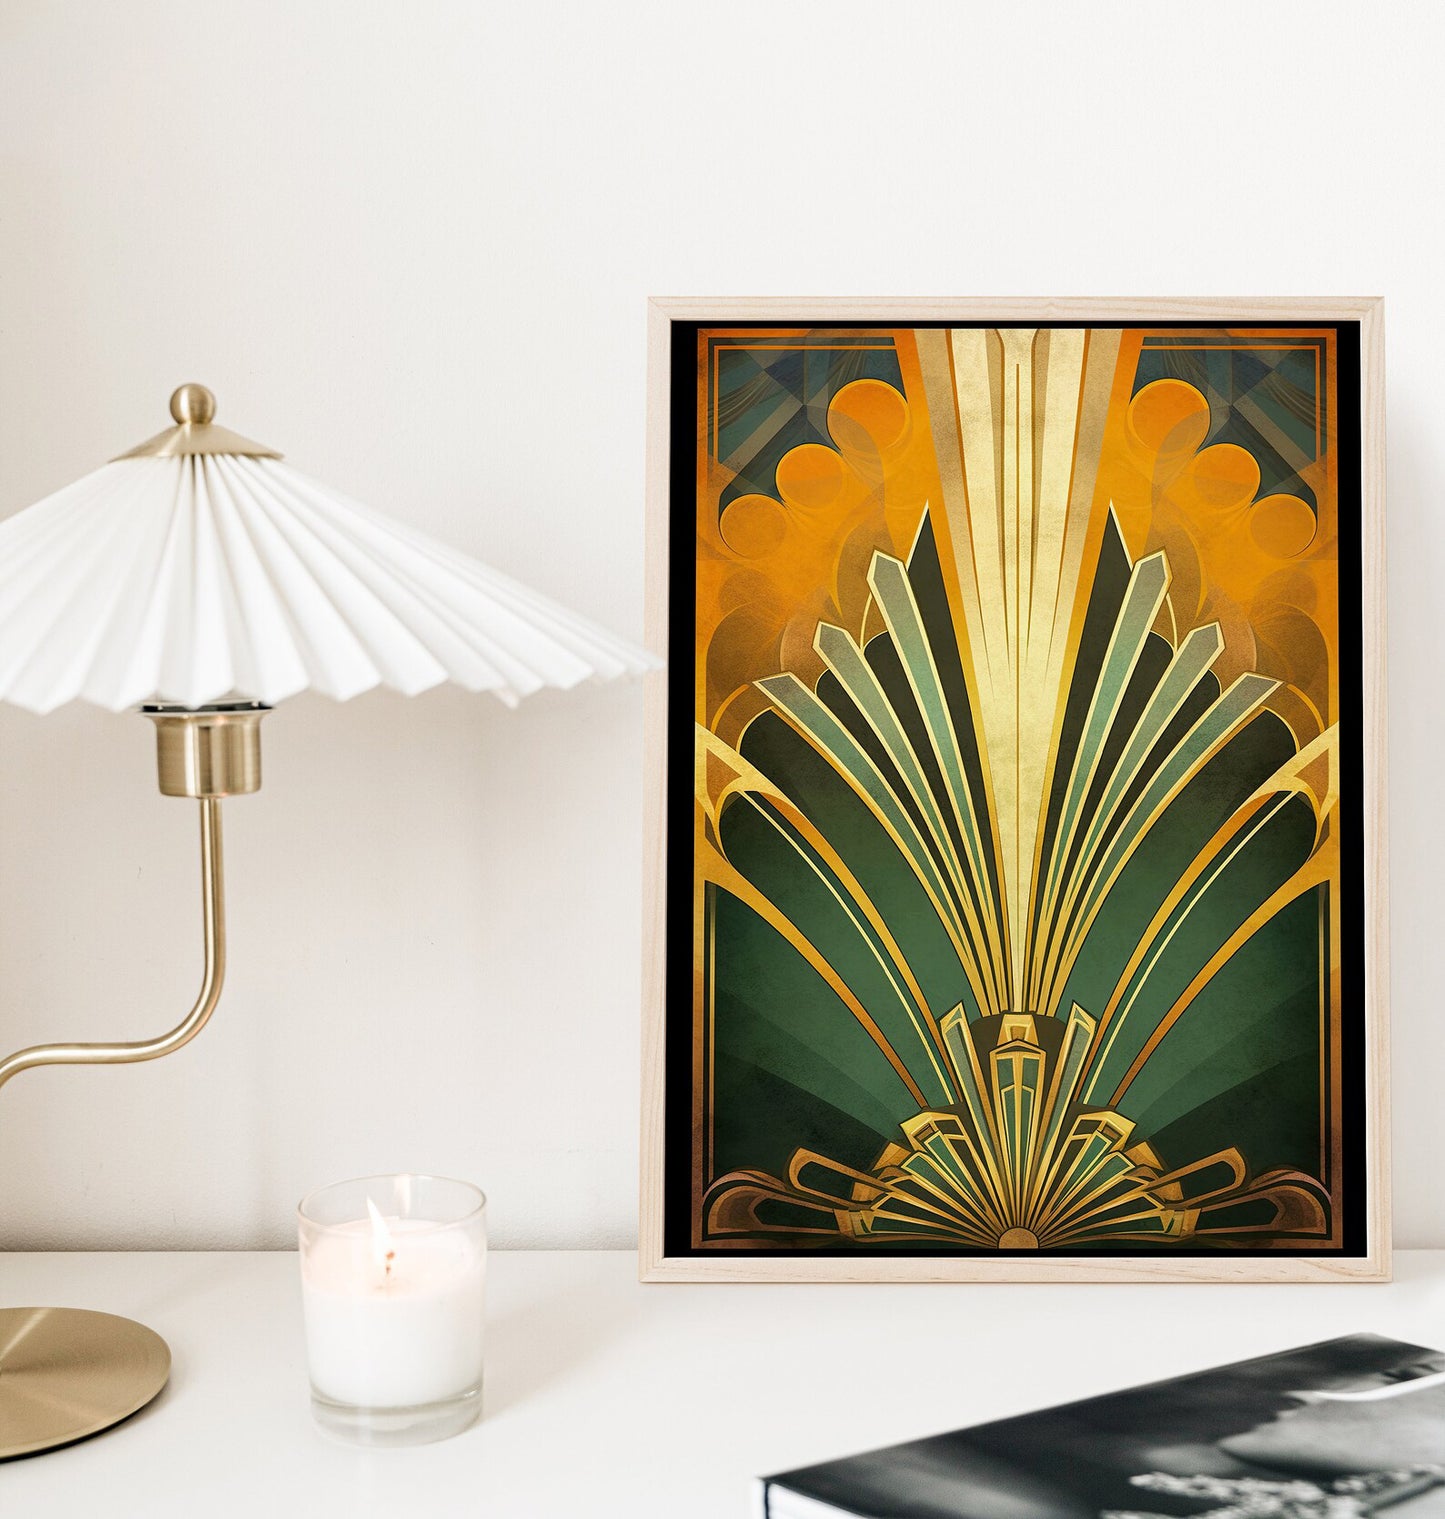 Green Gold Art Deco Poster, Classic Deco Design, Vintage Art Deco Print, 1920s Wall Art